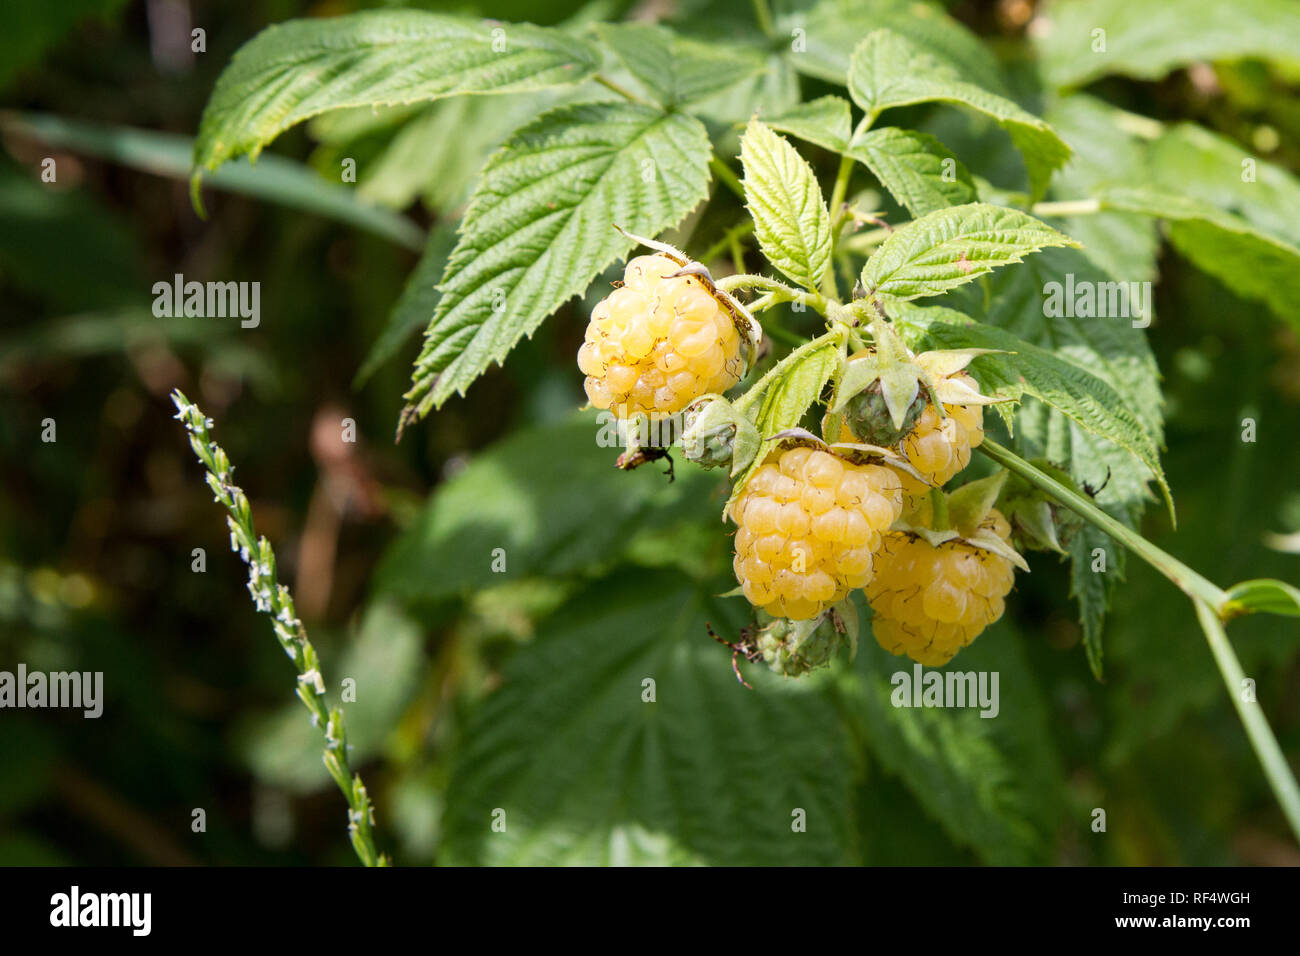 Les framboises jaunes mûrs sur un buisson. La framboise est le fruit comestible d'une multitude d'espèces de plantes du genre Rubus de la famille des roses. Banque D'Images